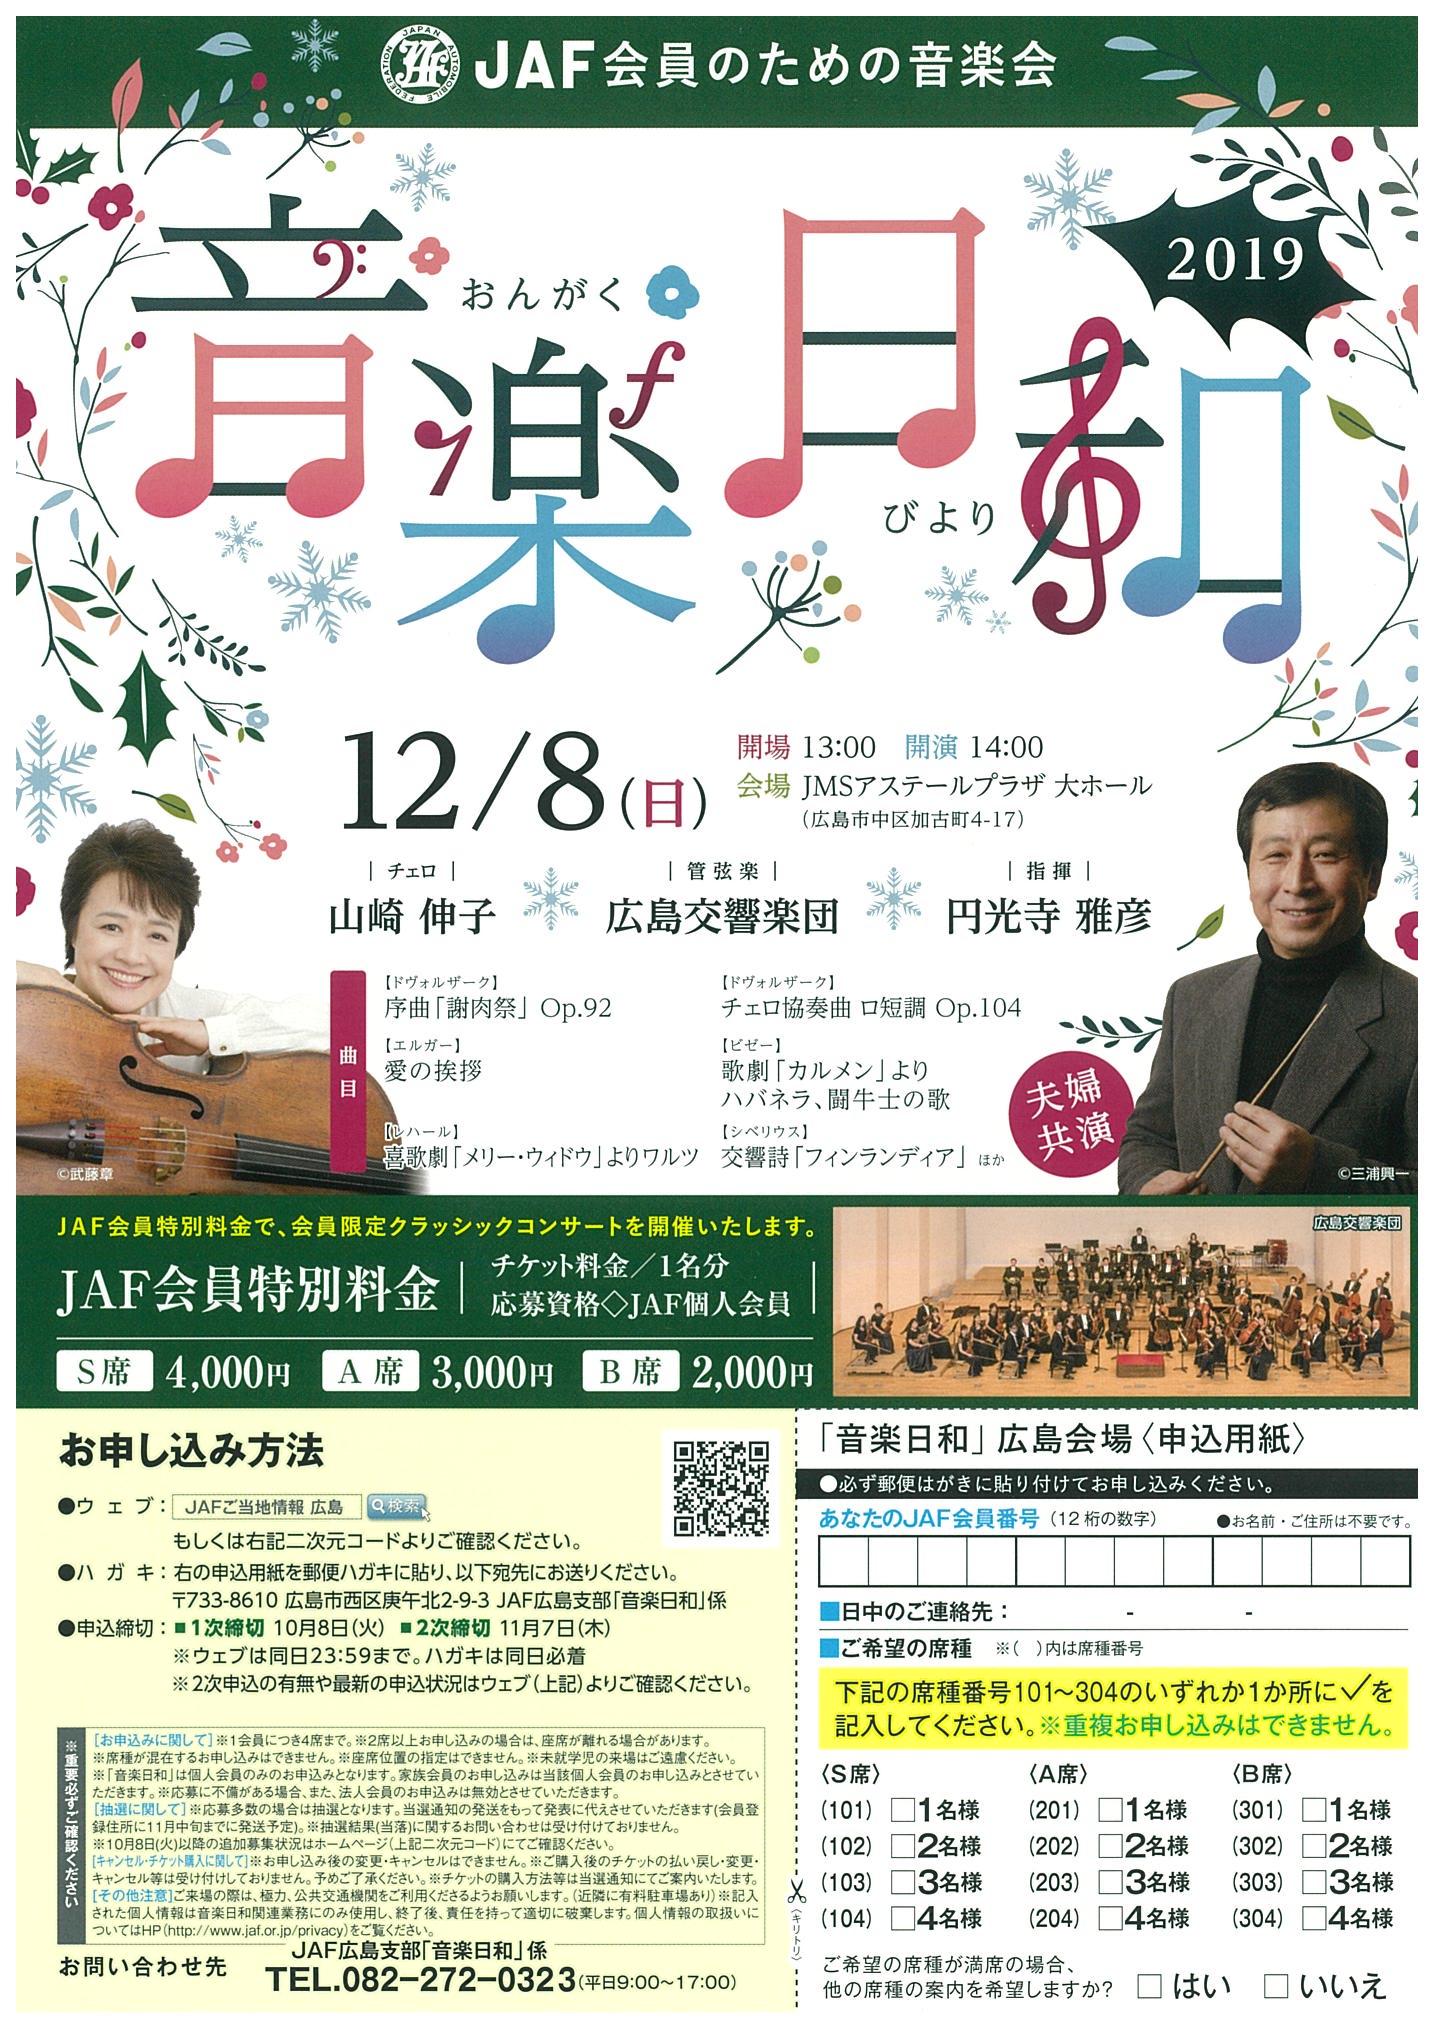 Jaf会員のための音楽会 音楽日和 広島公演 広島交響楽団